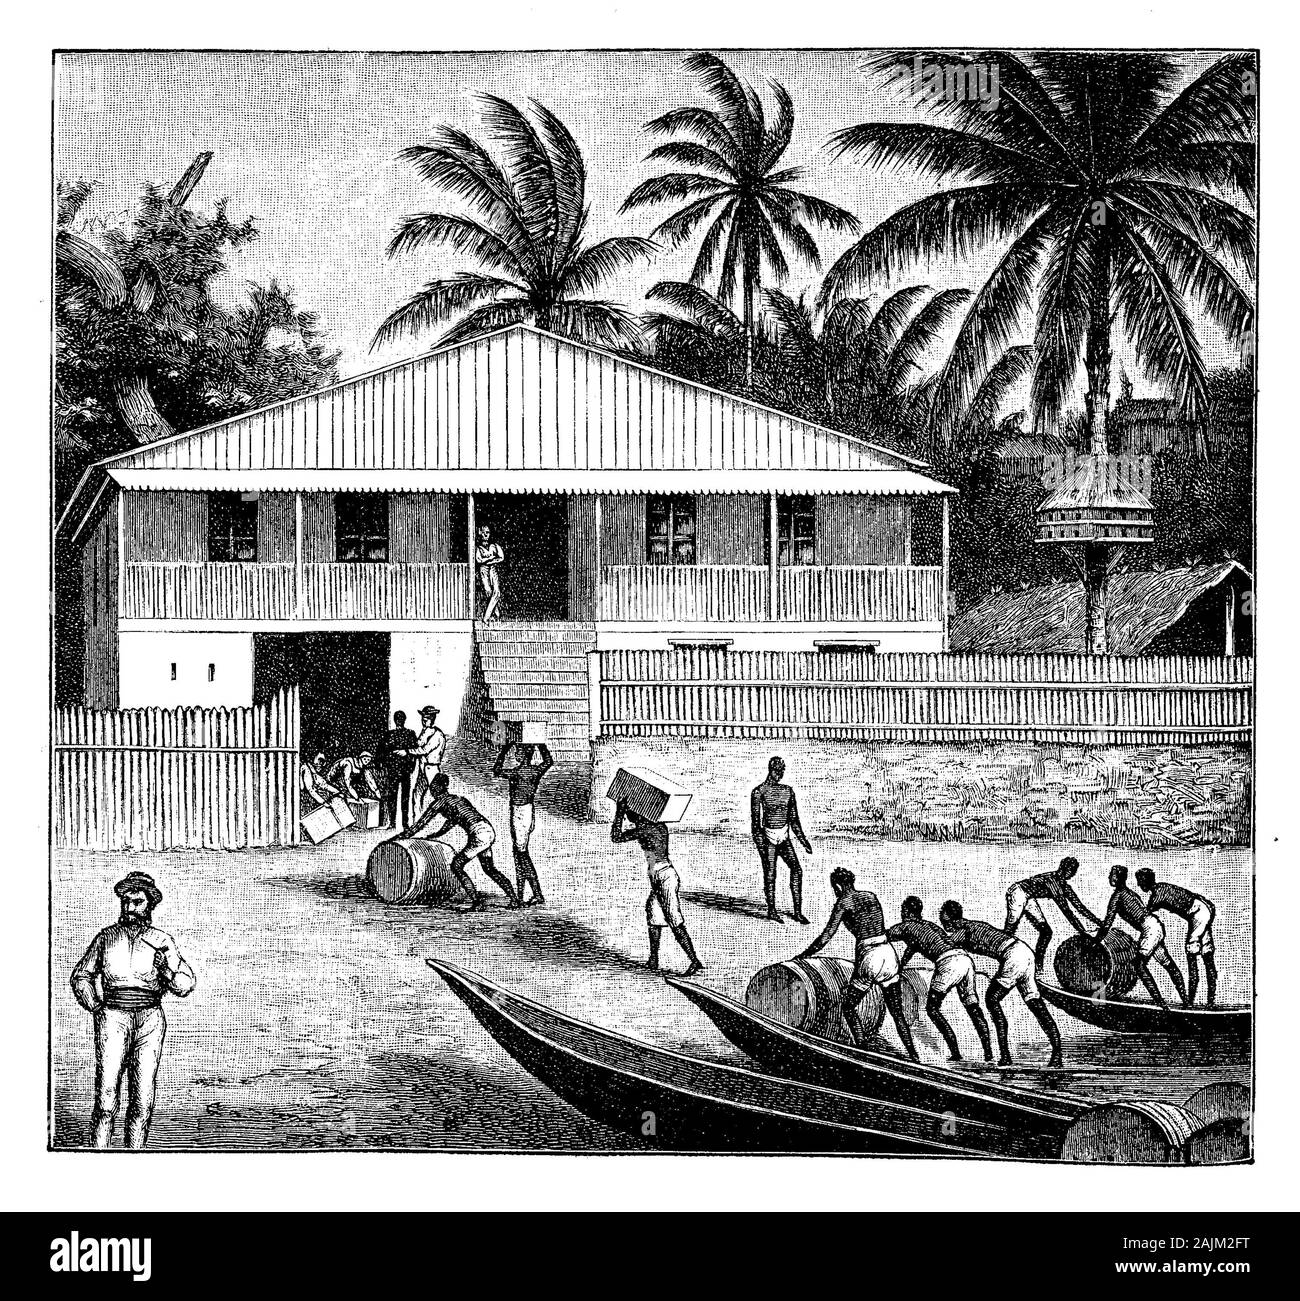 Togo, Afrique de l'Ouest - Transports d'esclaves de barils de l'huile de palme, le haut du pays des ressources tirées par le palmier Elaeis guineensis, 19e siècle illustration Banque D'Images